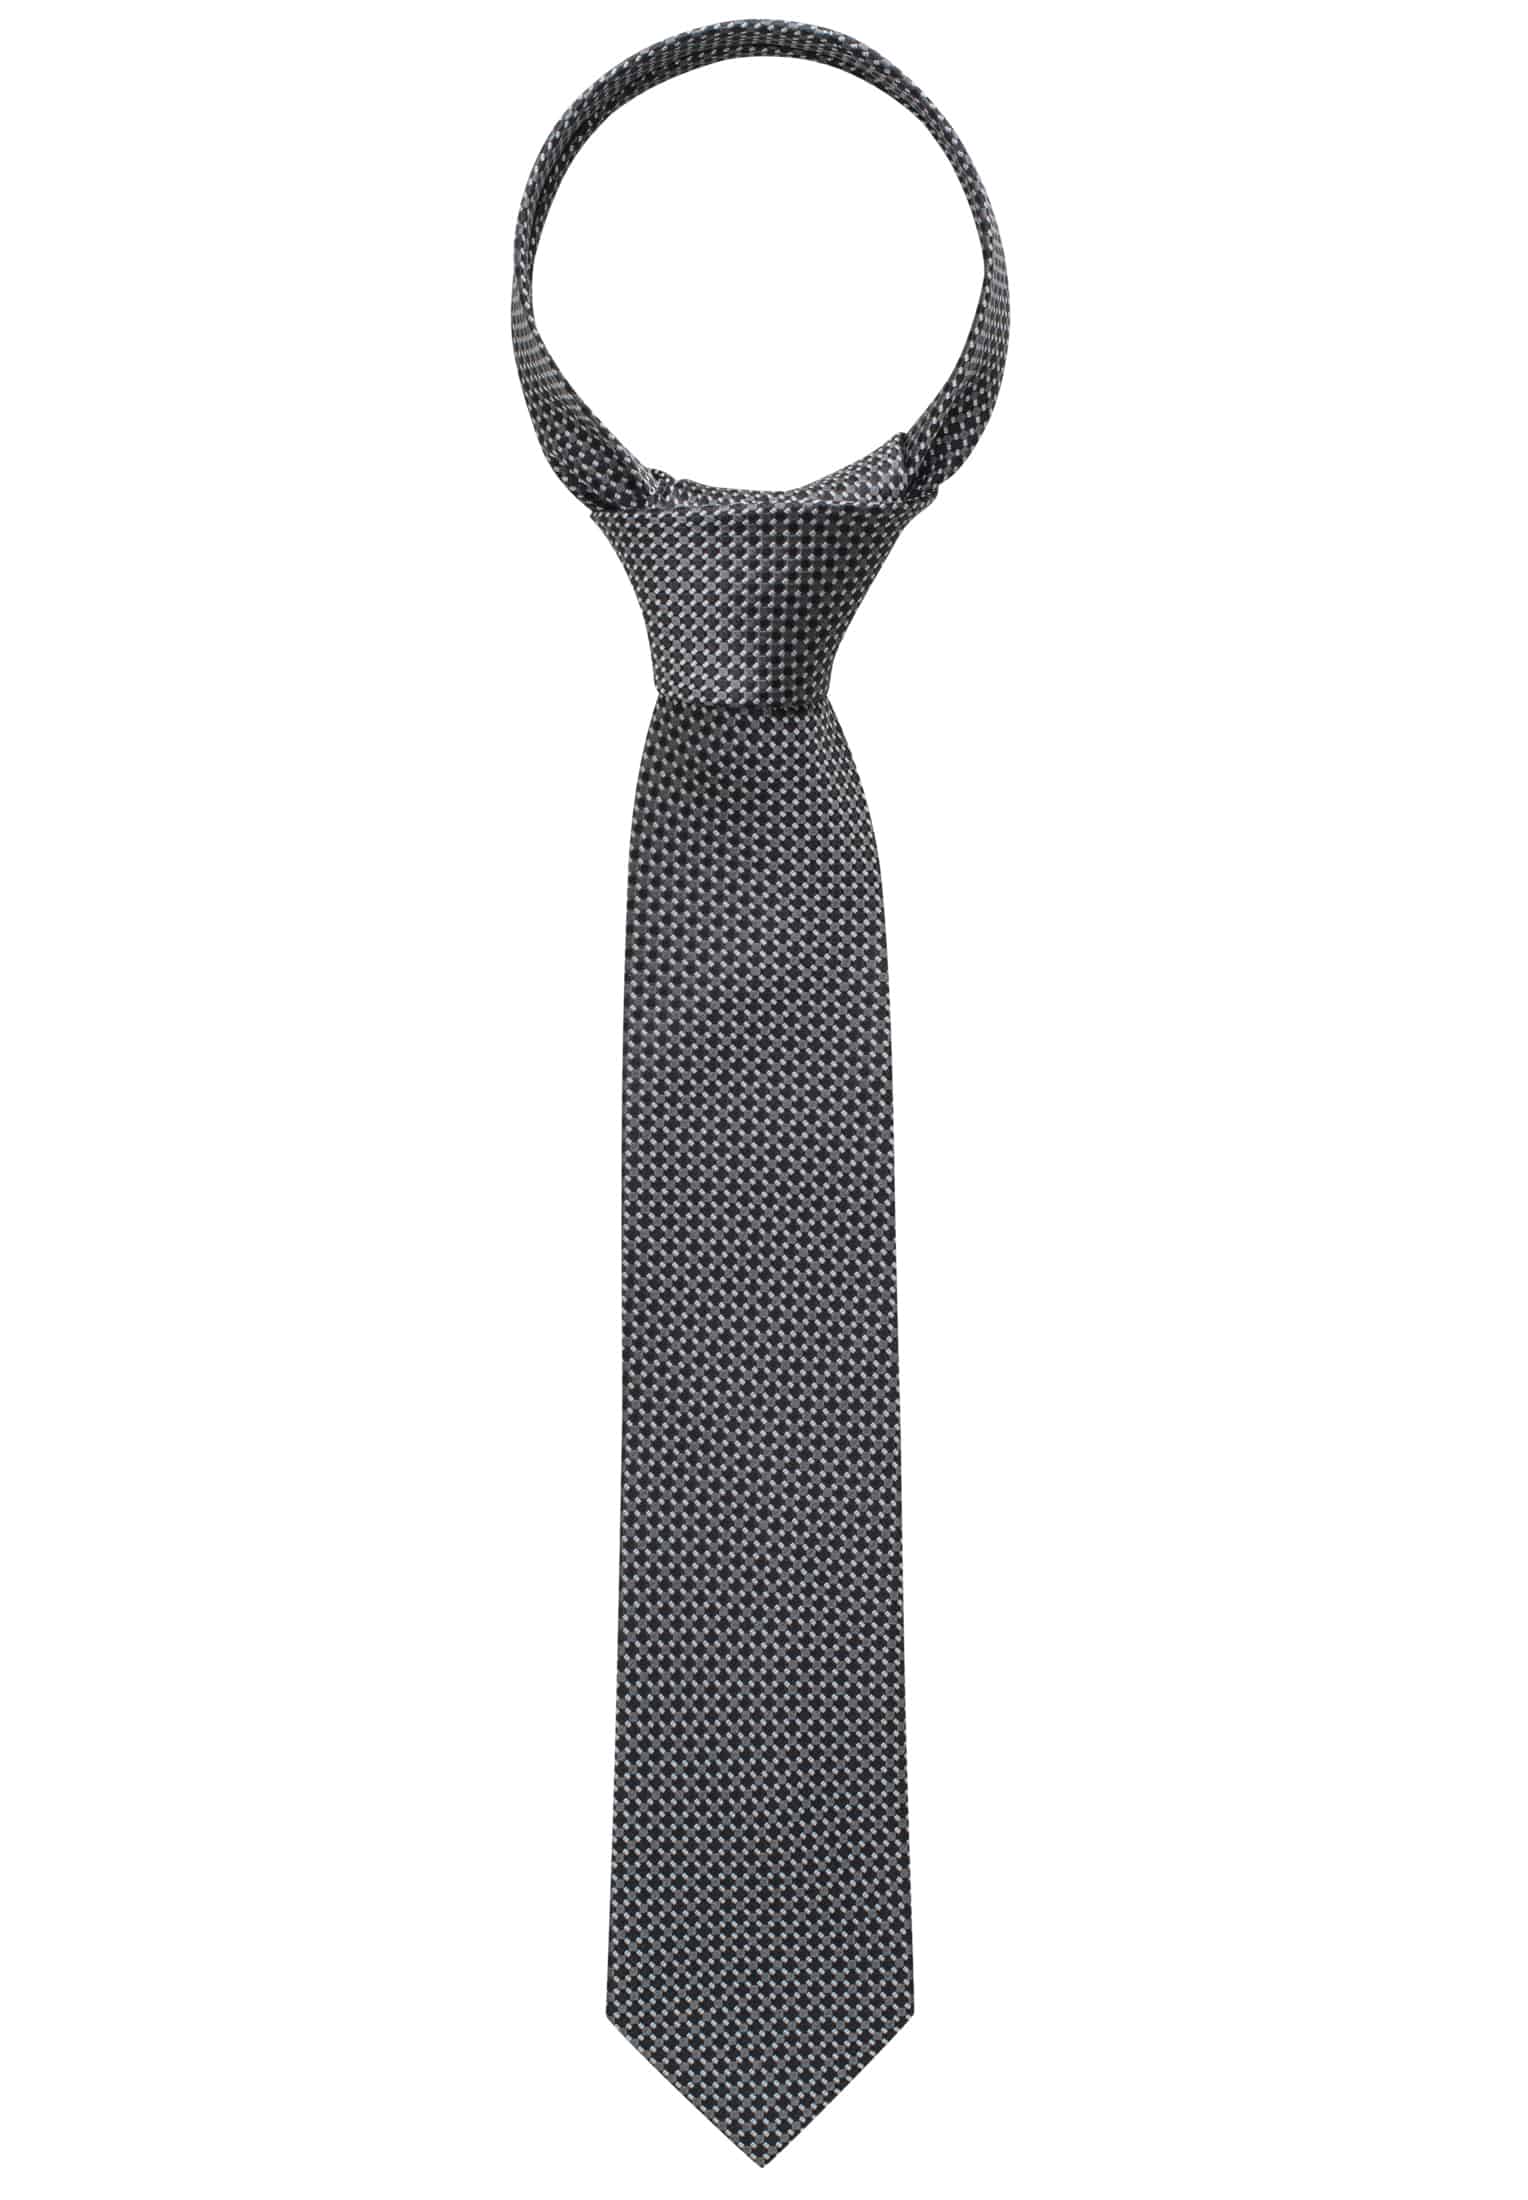 Krawatte in schwarz strukturiert | schwarz | 142 | 1AC00407-03-91-142